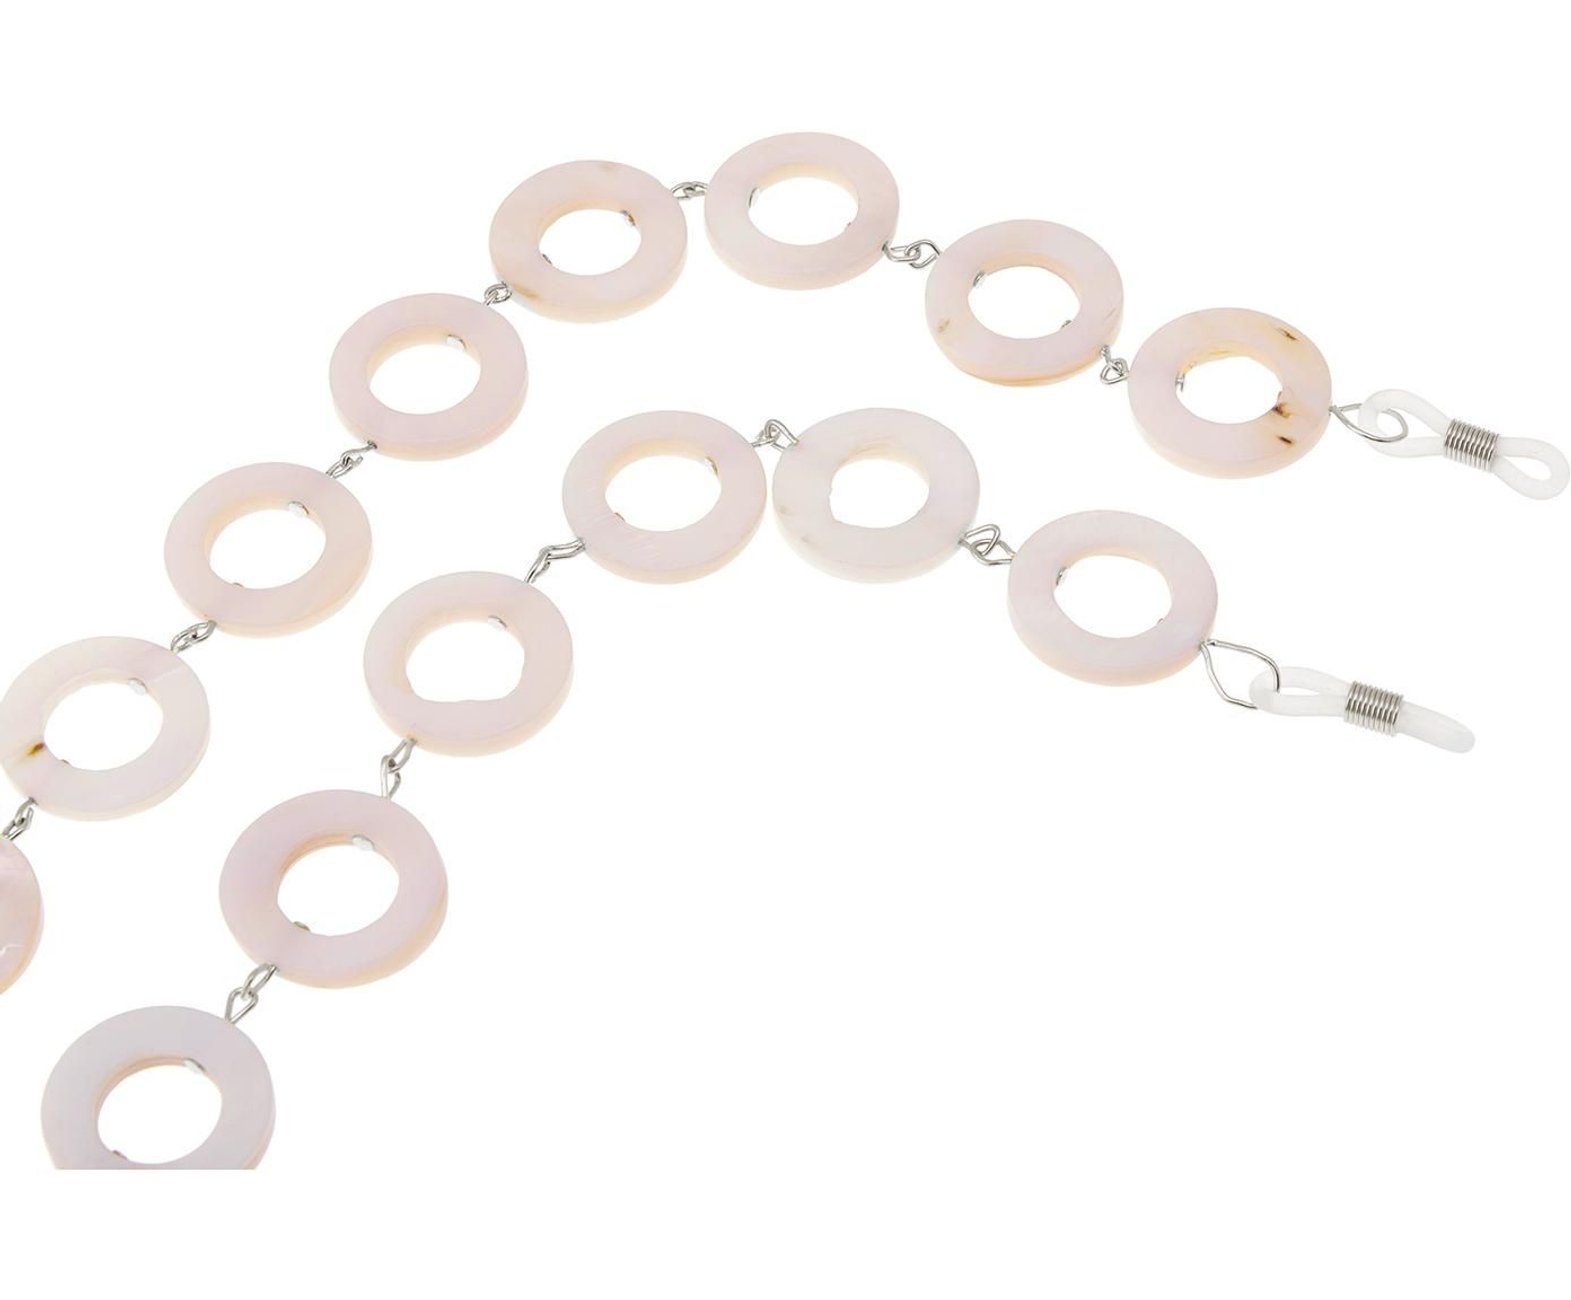 Damen Schmuck Gemshine Perlenkette Brillenkette für Sonnenbrille, Lesebrille, Perlmutt Donut Scheiben, Made in Germany